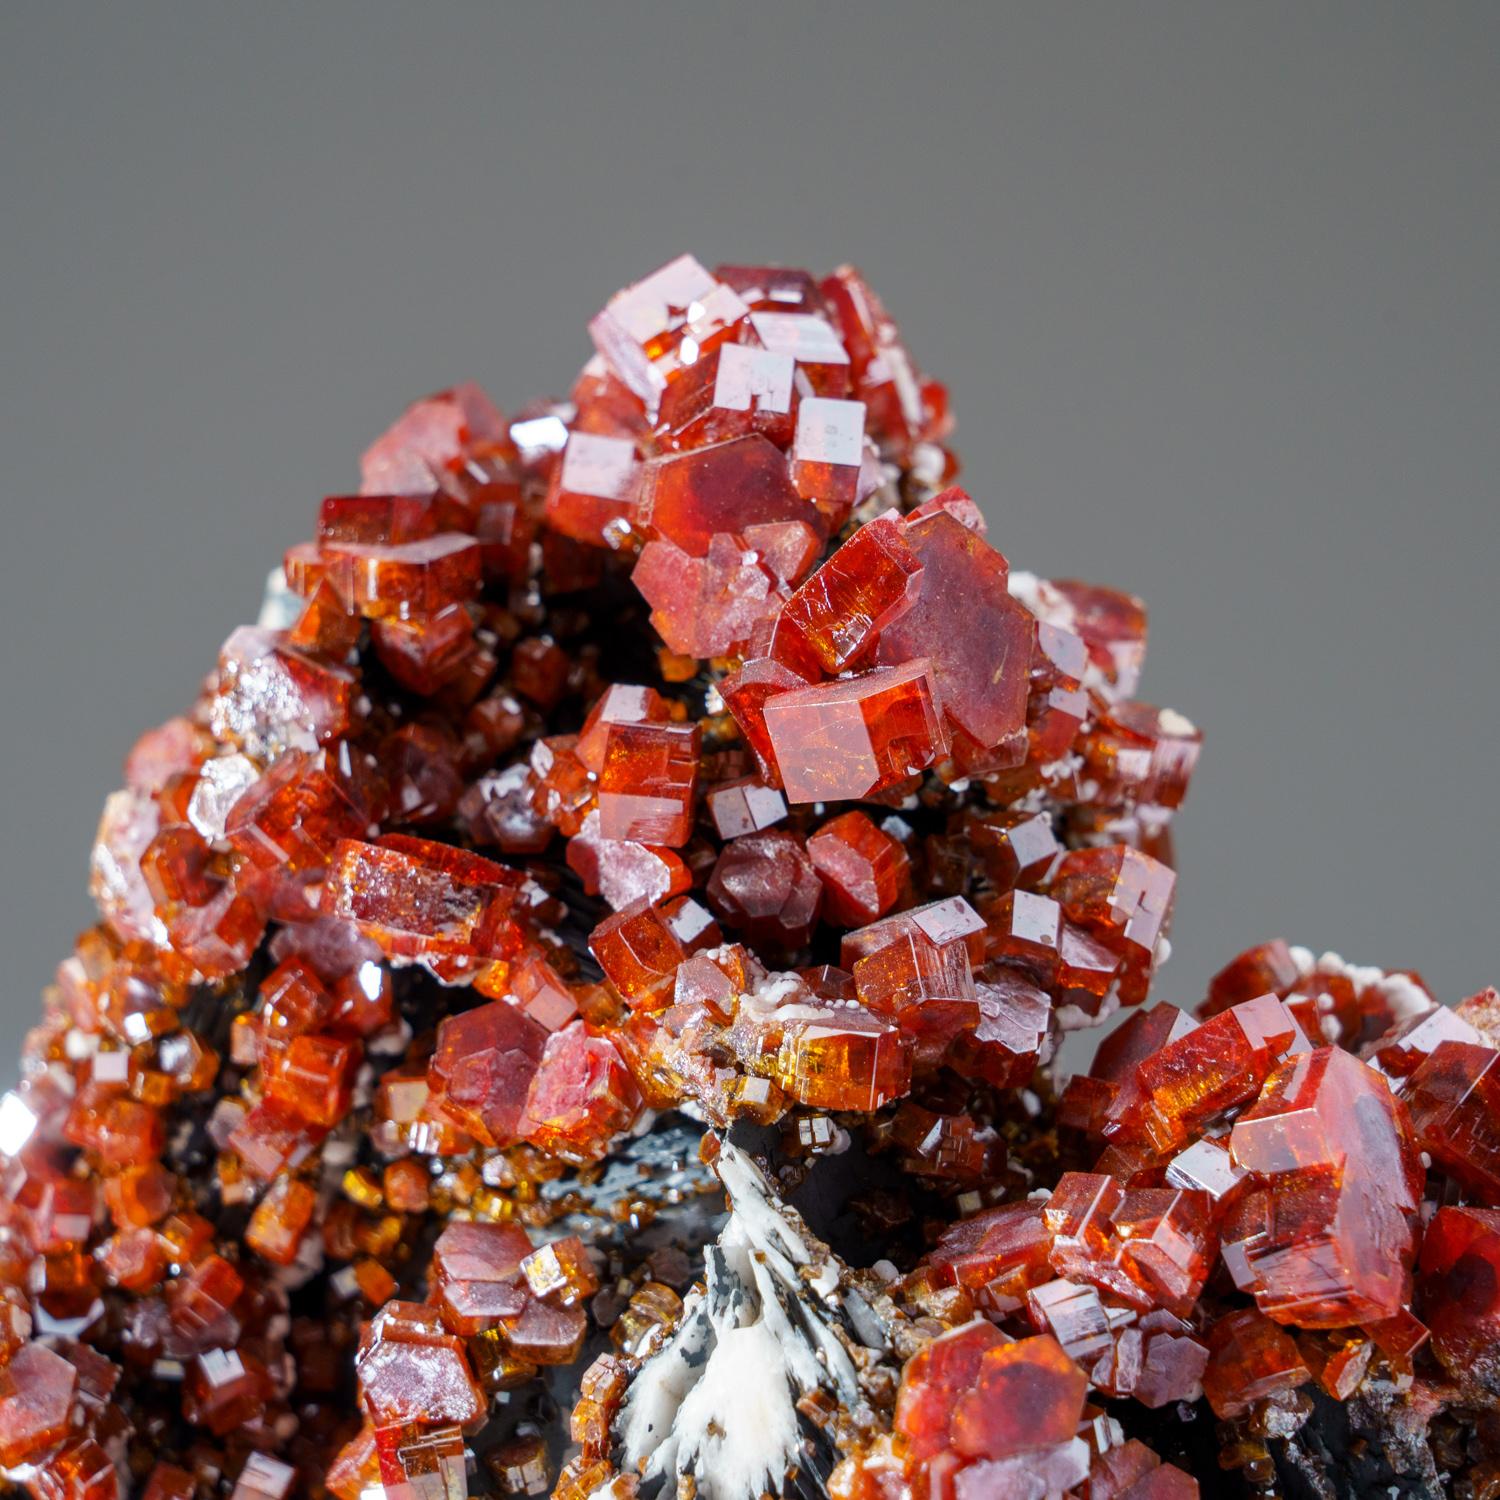 De Mibladen, montagnes de l'Atlas, province de Khénifra, Maroc 

Voici un spécimen exceptionnel de classe mondiale de cristaux lustrés de vanadinite rouge-orange couvrant toutes les faces de la matrice. Les cristaux de vanadinite sont hexagonaux,